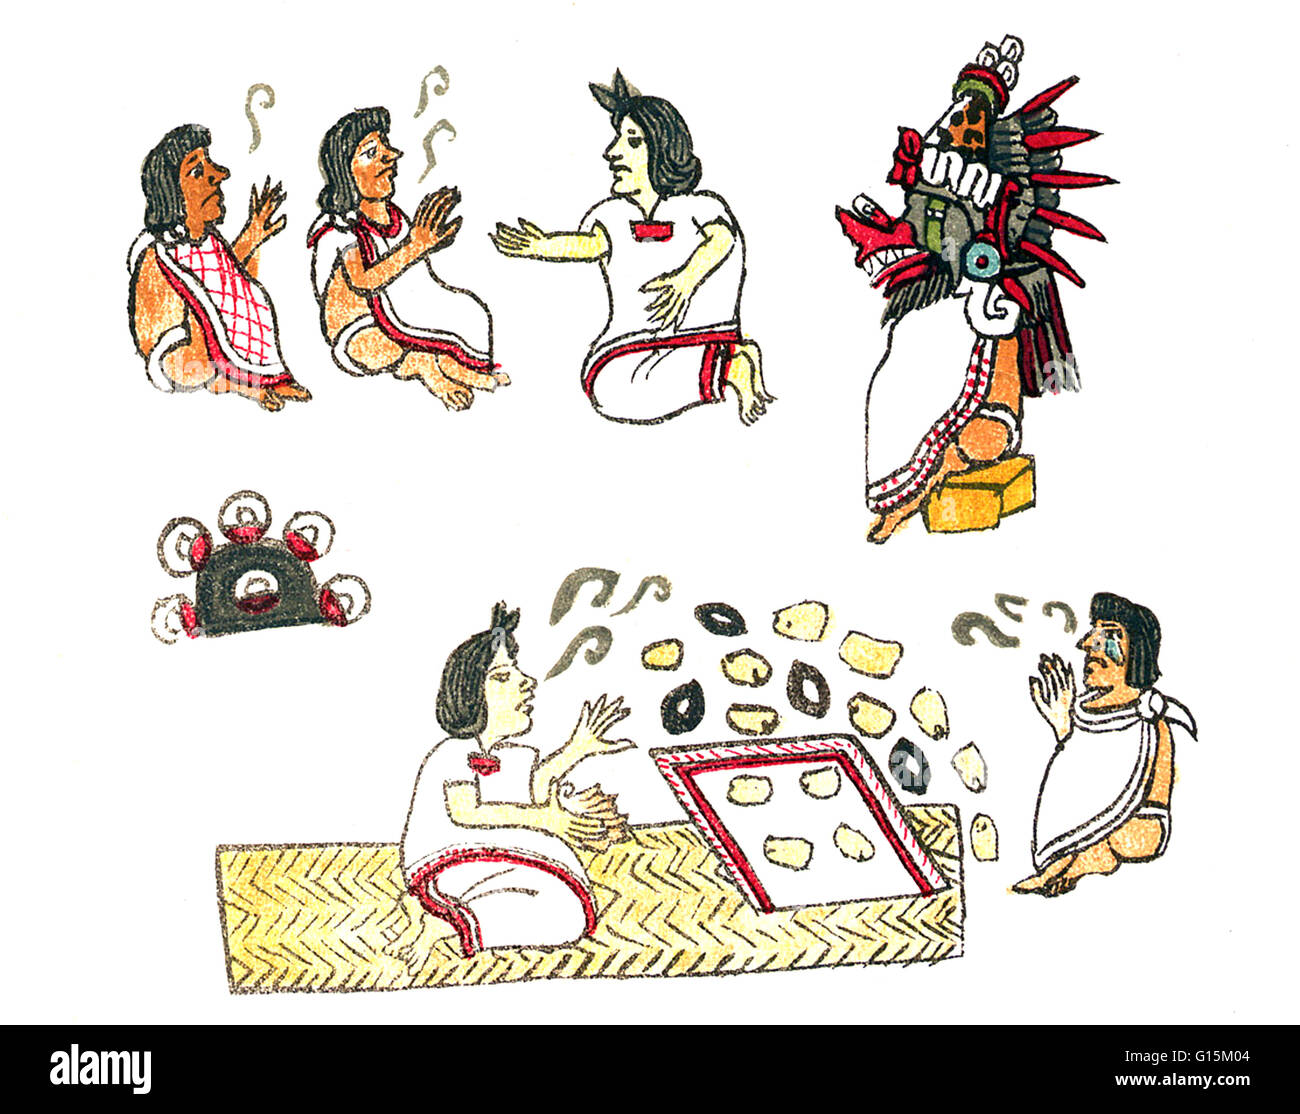 La médecine aztèque, prises par la Commission du Codex Magliabechiano. Deux patients expliquer leurs problèmes à un médecin. Le médecin a découvert la cause de la maladie en jetant des grains de maïs sur un morceau de tissu (ou dans un récipient contenant de l'eau). Selon la façon dont le Banque D'Images